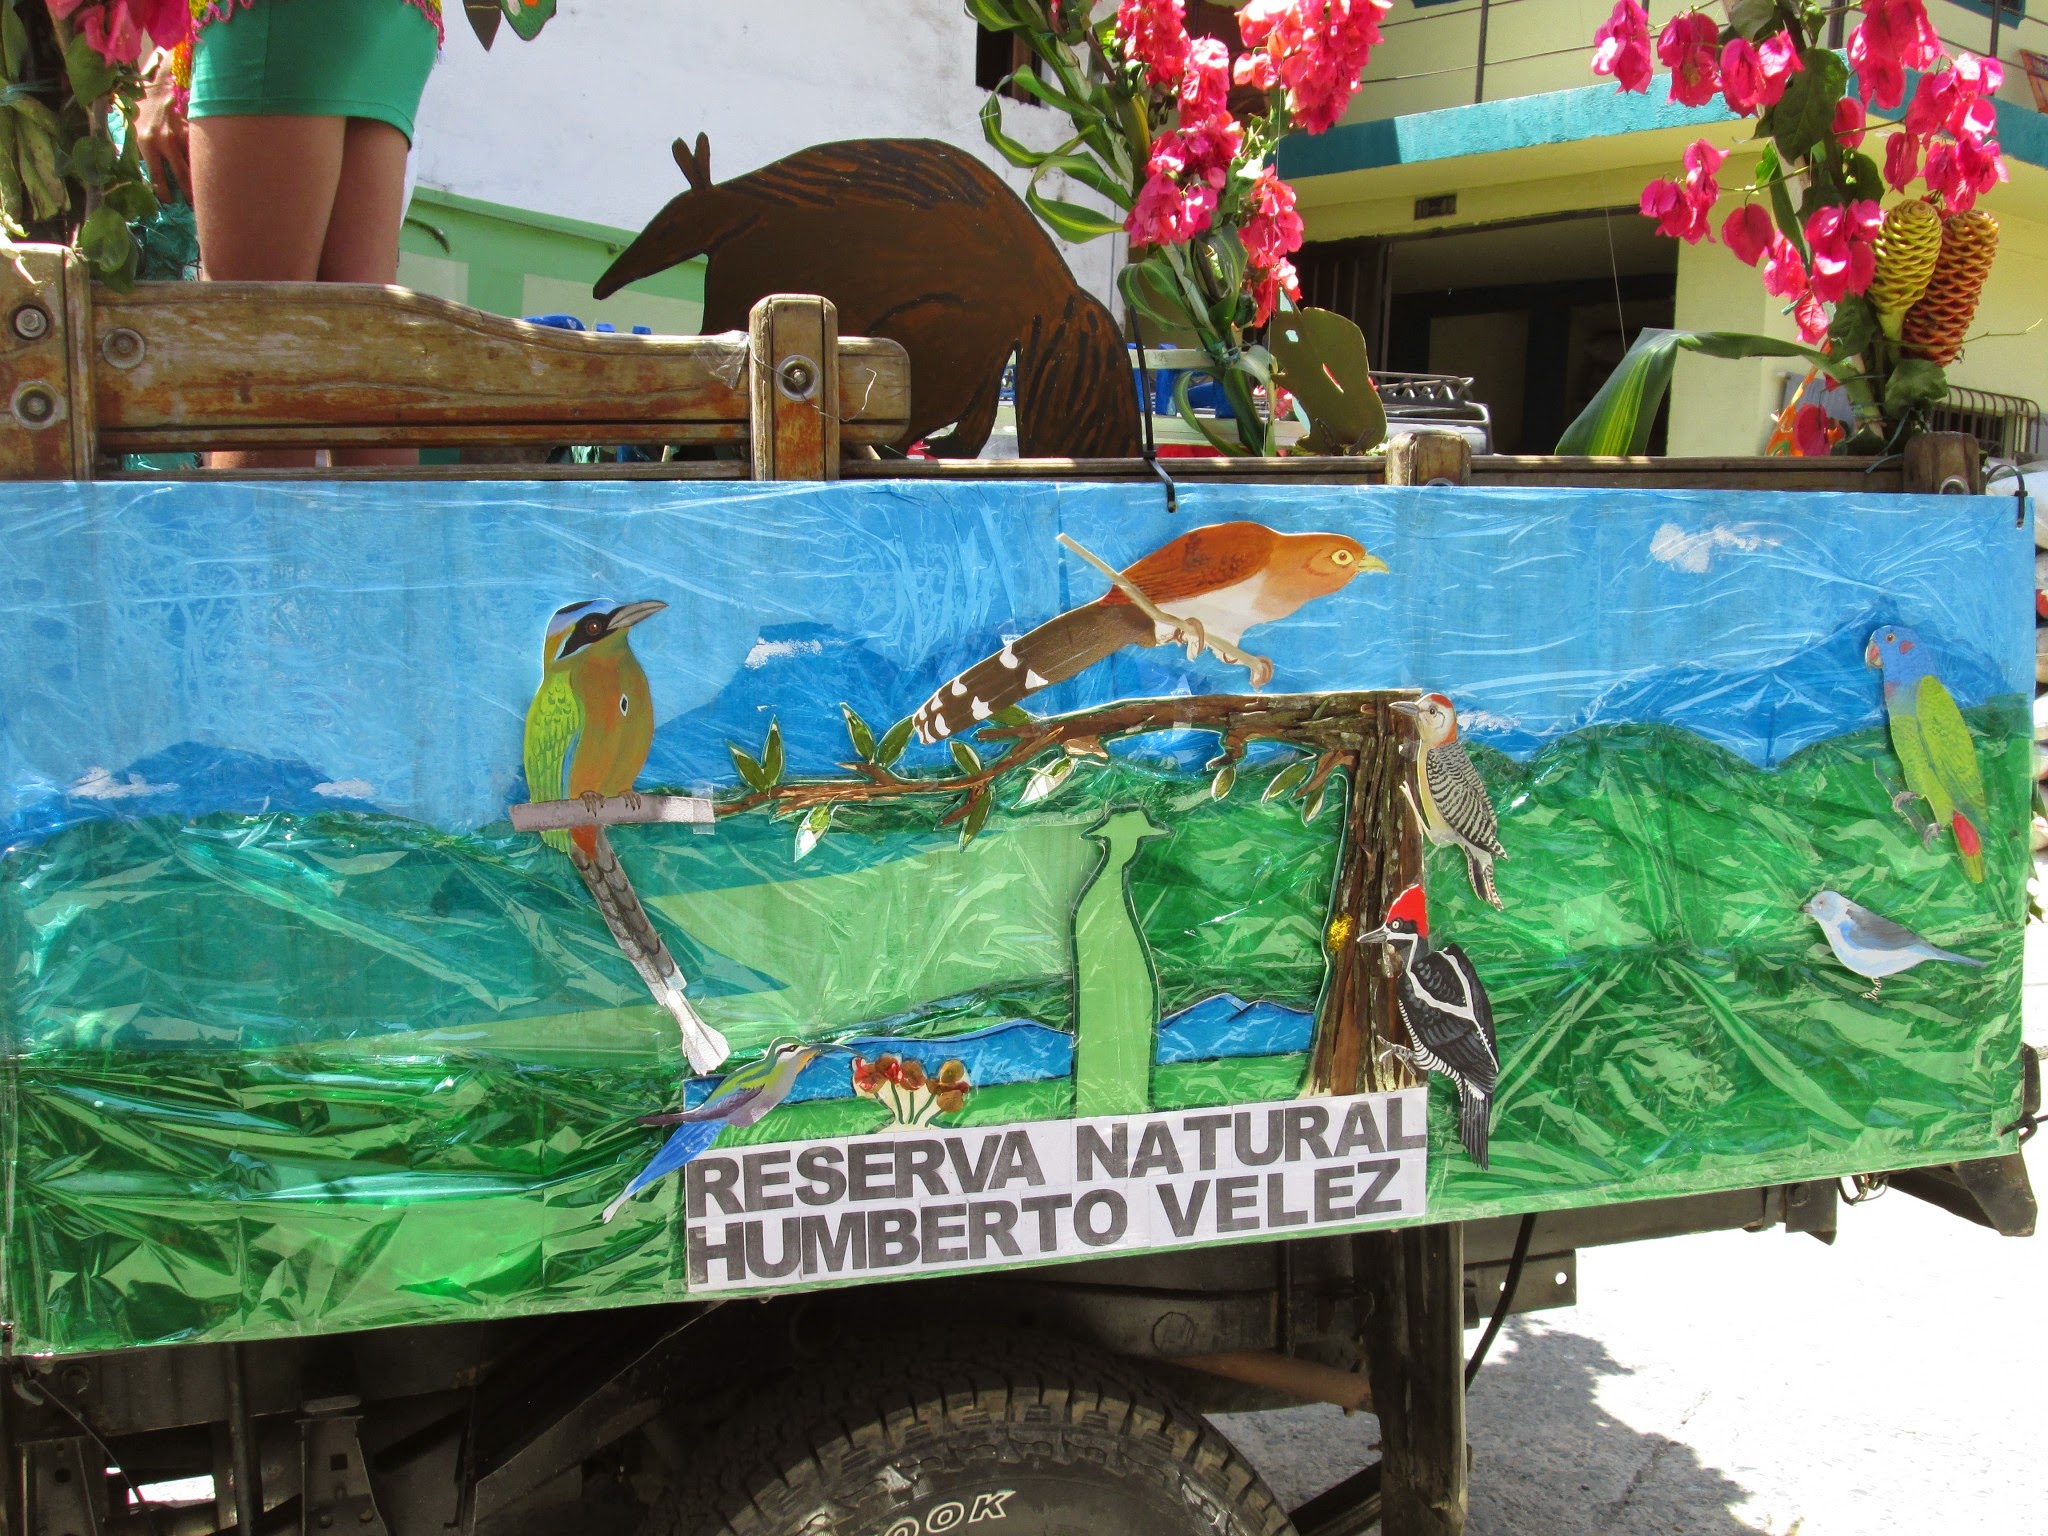 27/09/2014. Valla para decorar camioneta donde iba la reina de la vereda participando en las fiestas de la identidad de Balboa.